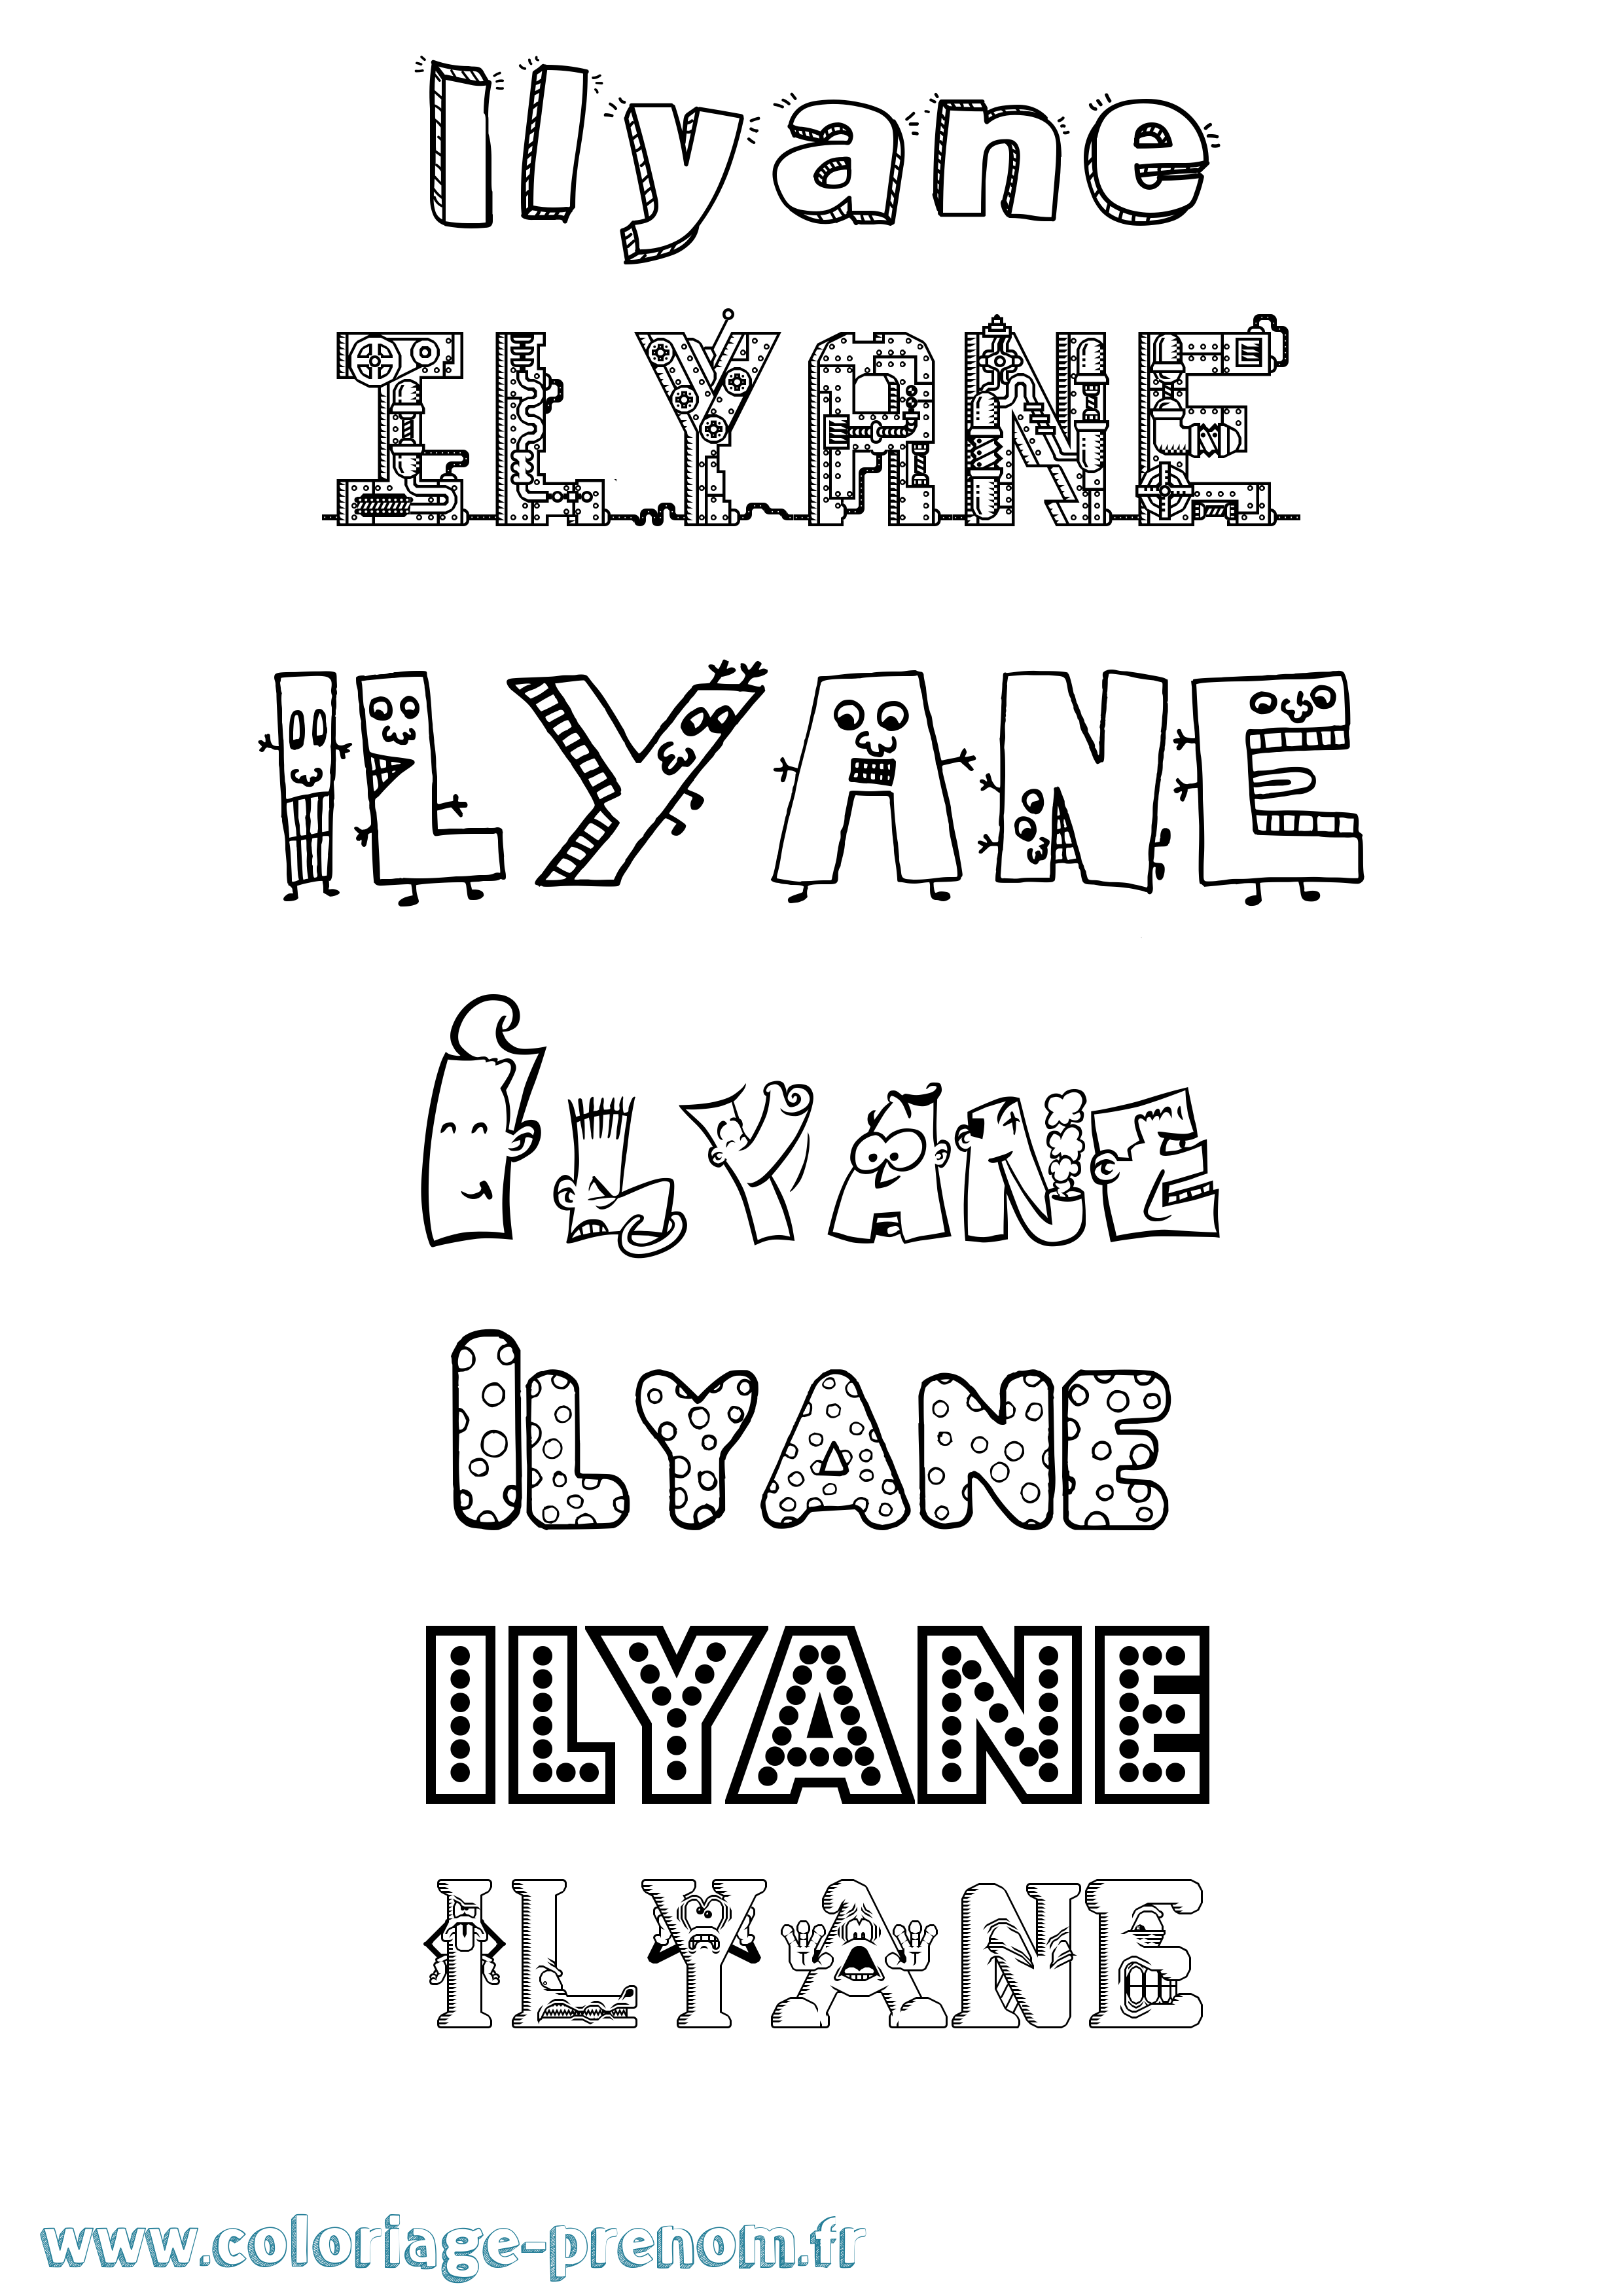 Coloriage prénom Ilyane Fun